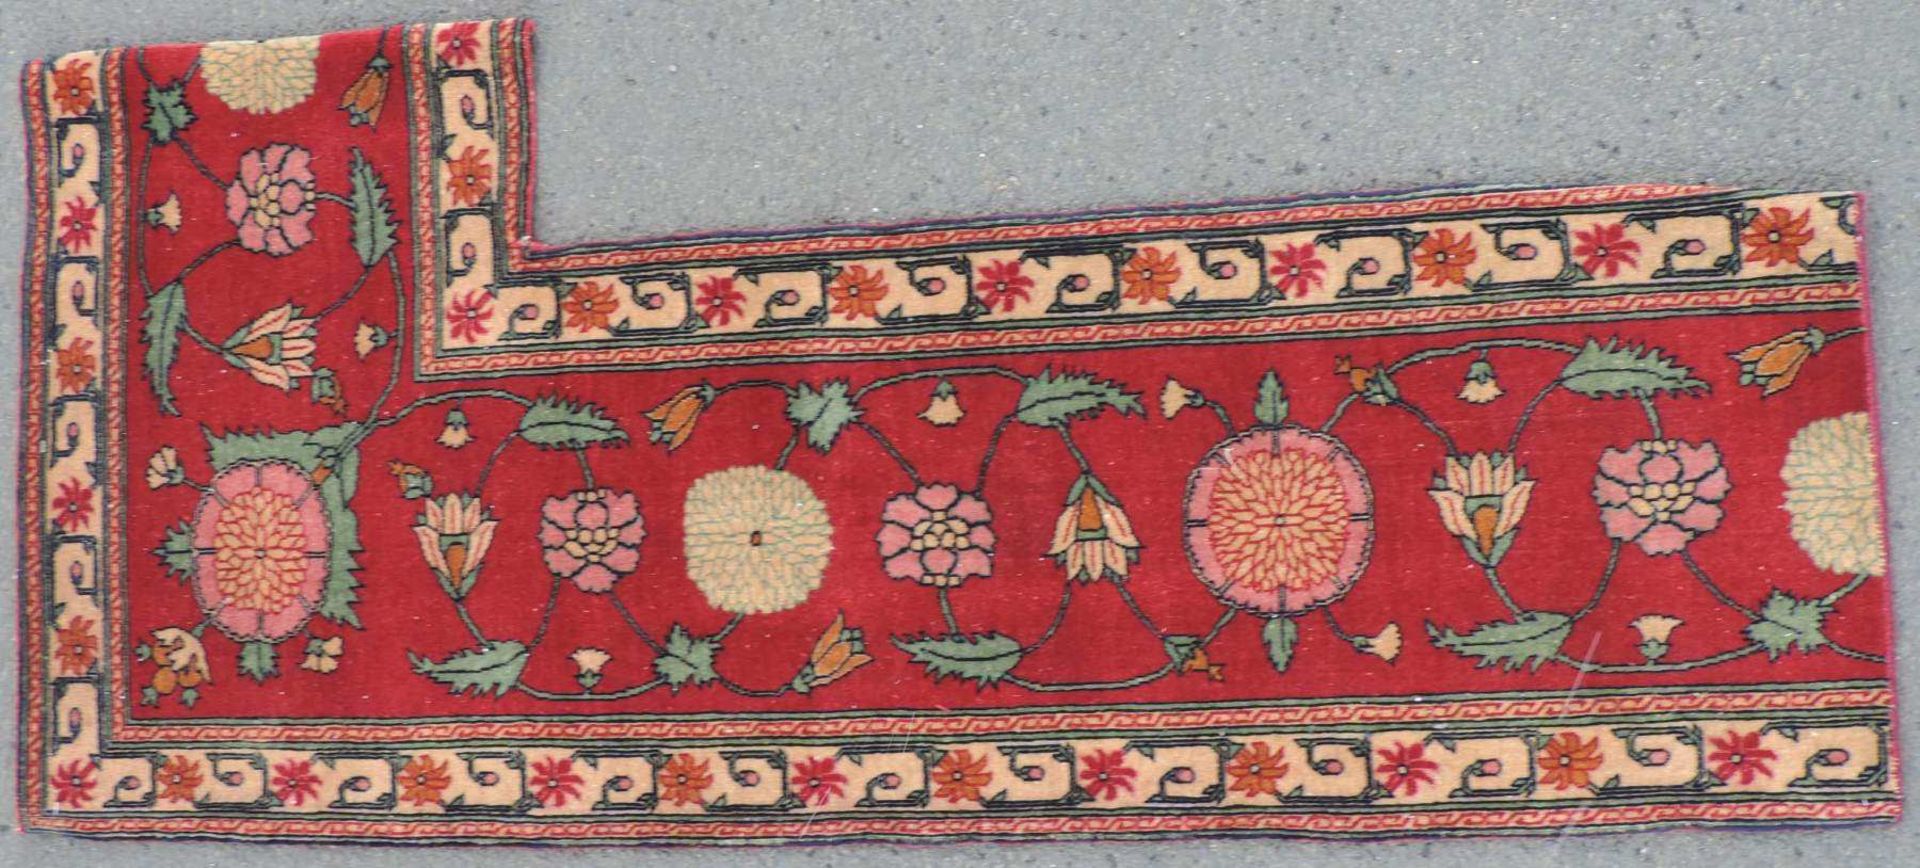 "Mogul" Teppichfragment, Indien. Antik, 19. Jahrhundert. 137 cm x 61 cm. Handgeknüpft. Wolle auf